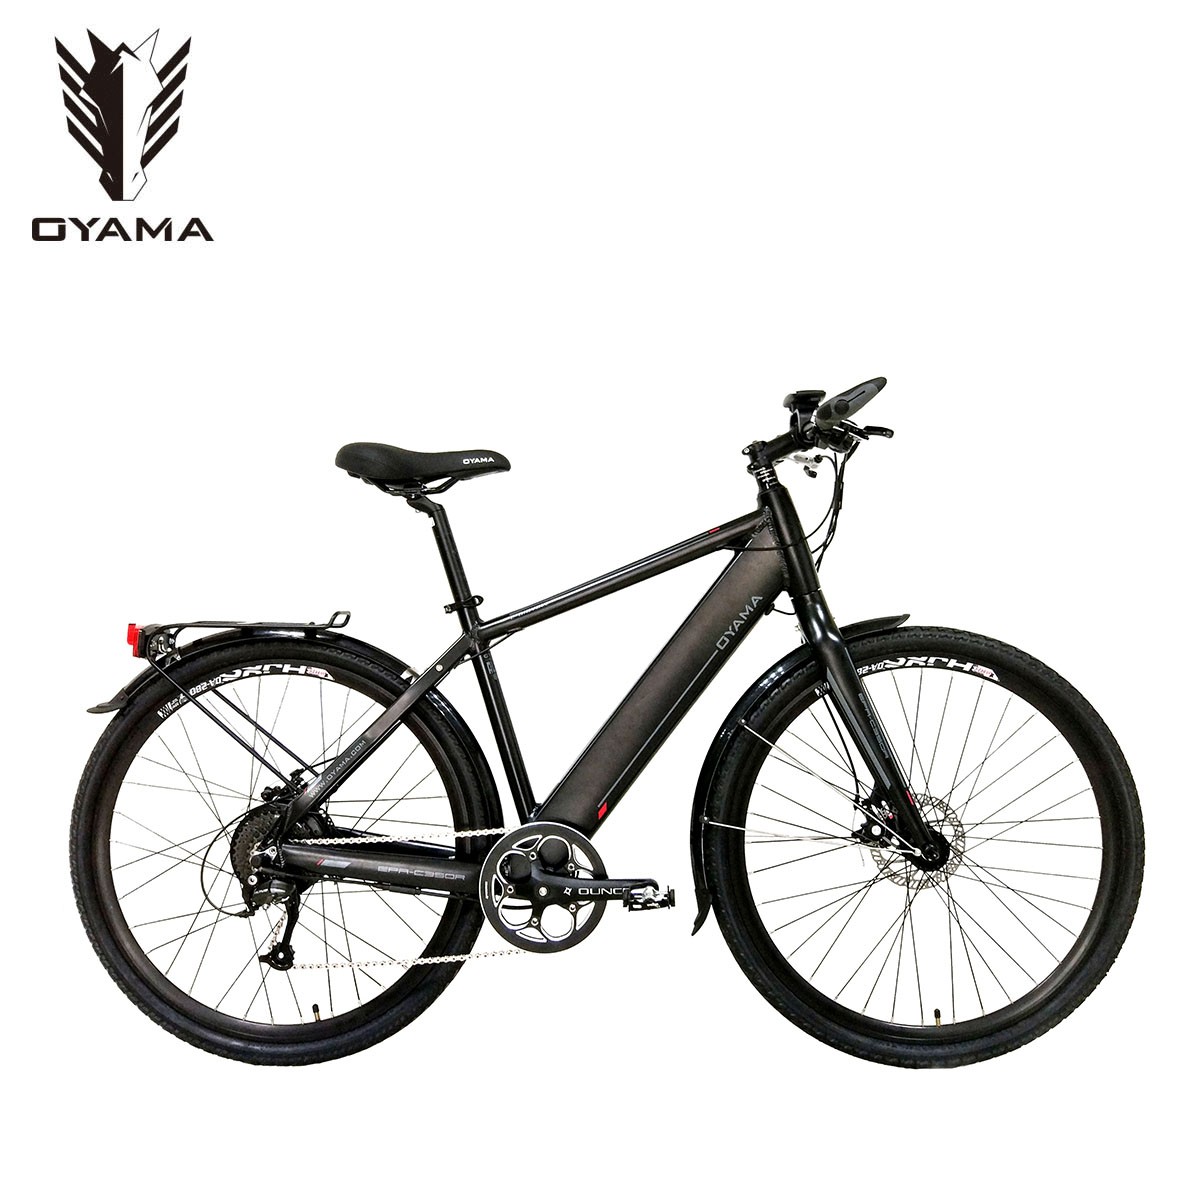 oyama ranger 1.3 hybrid bike